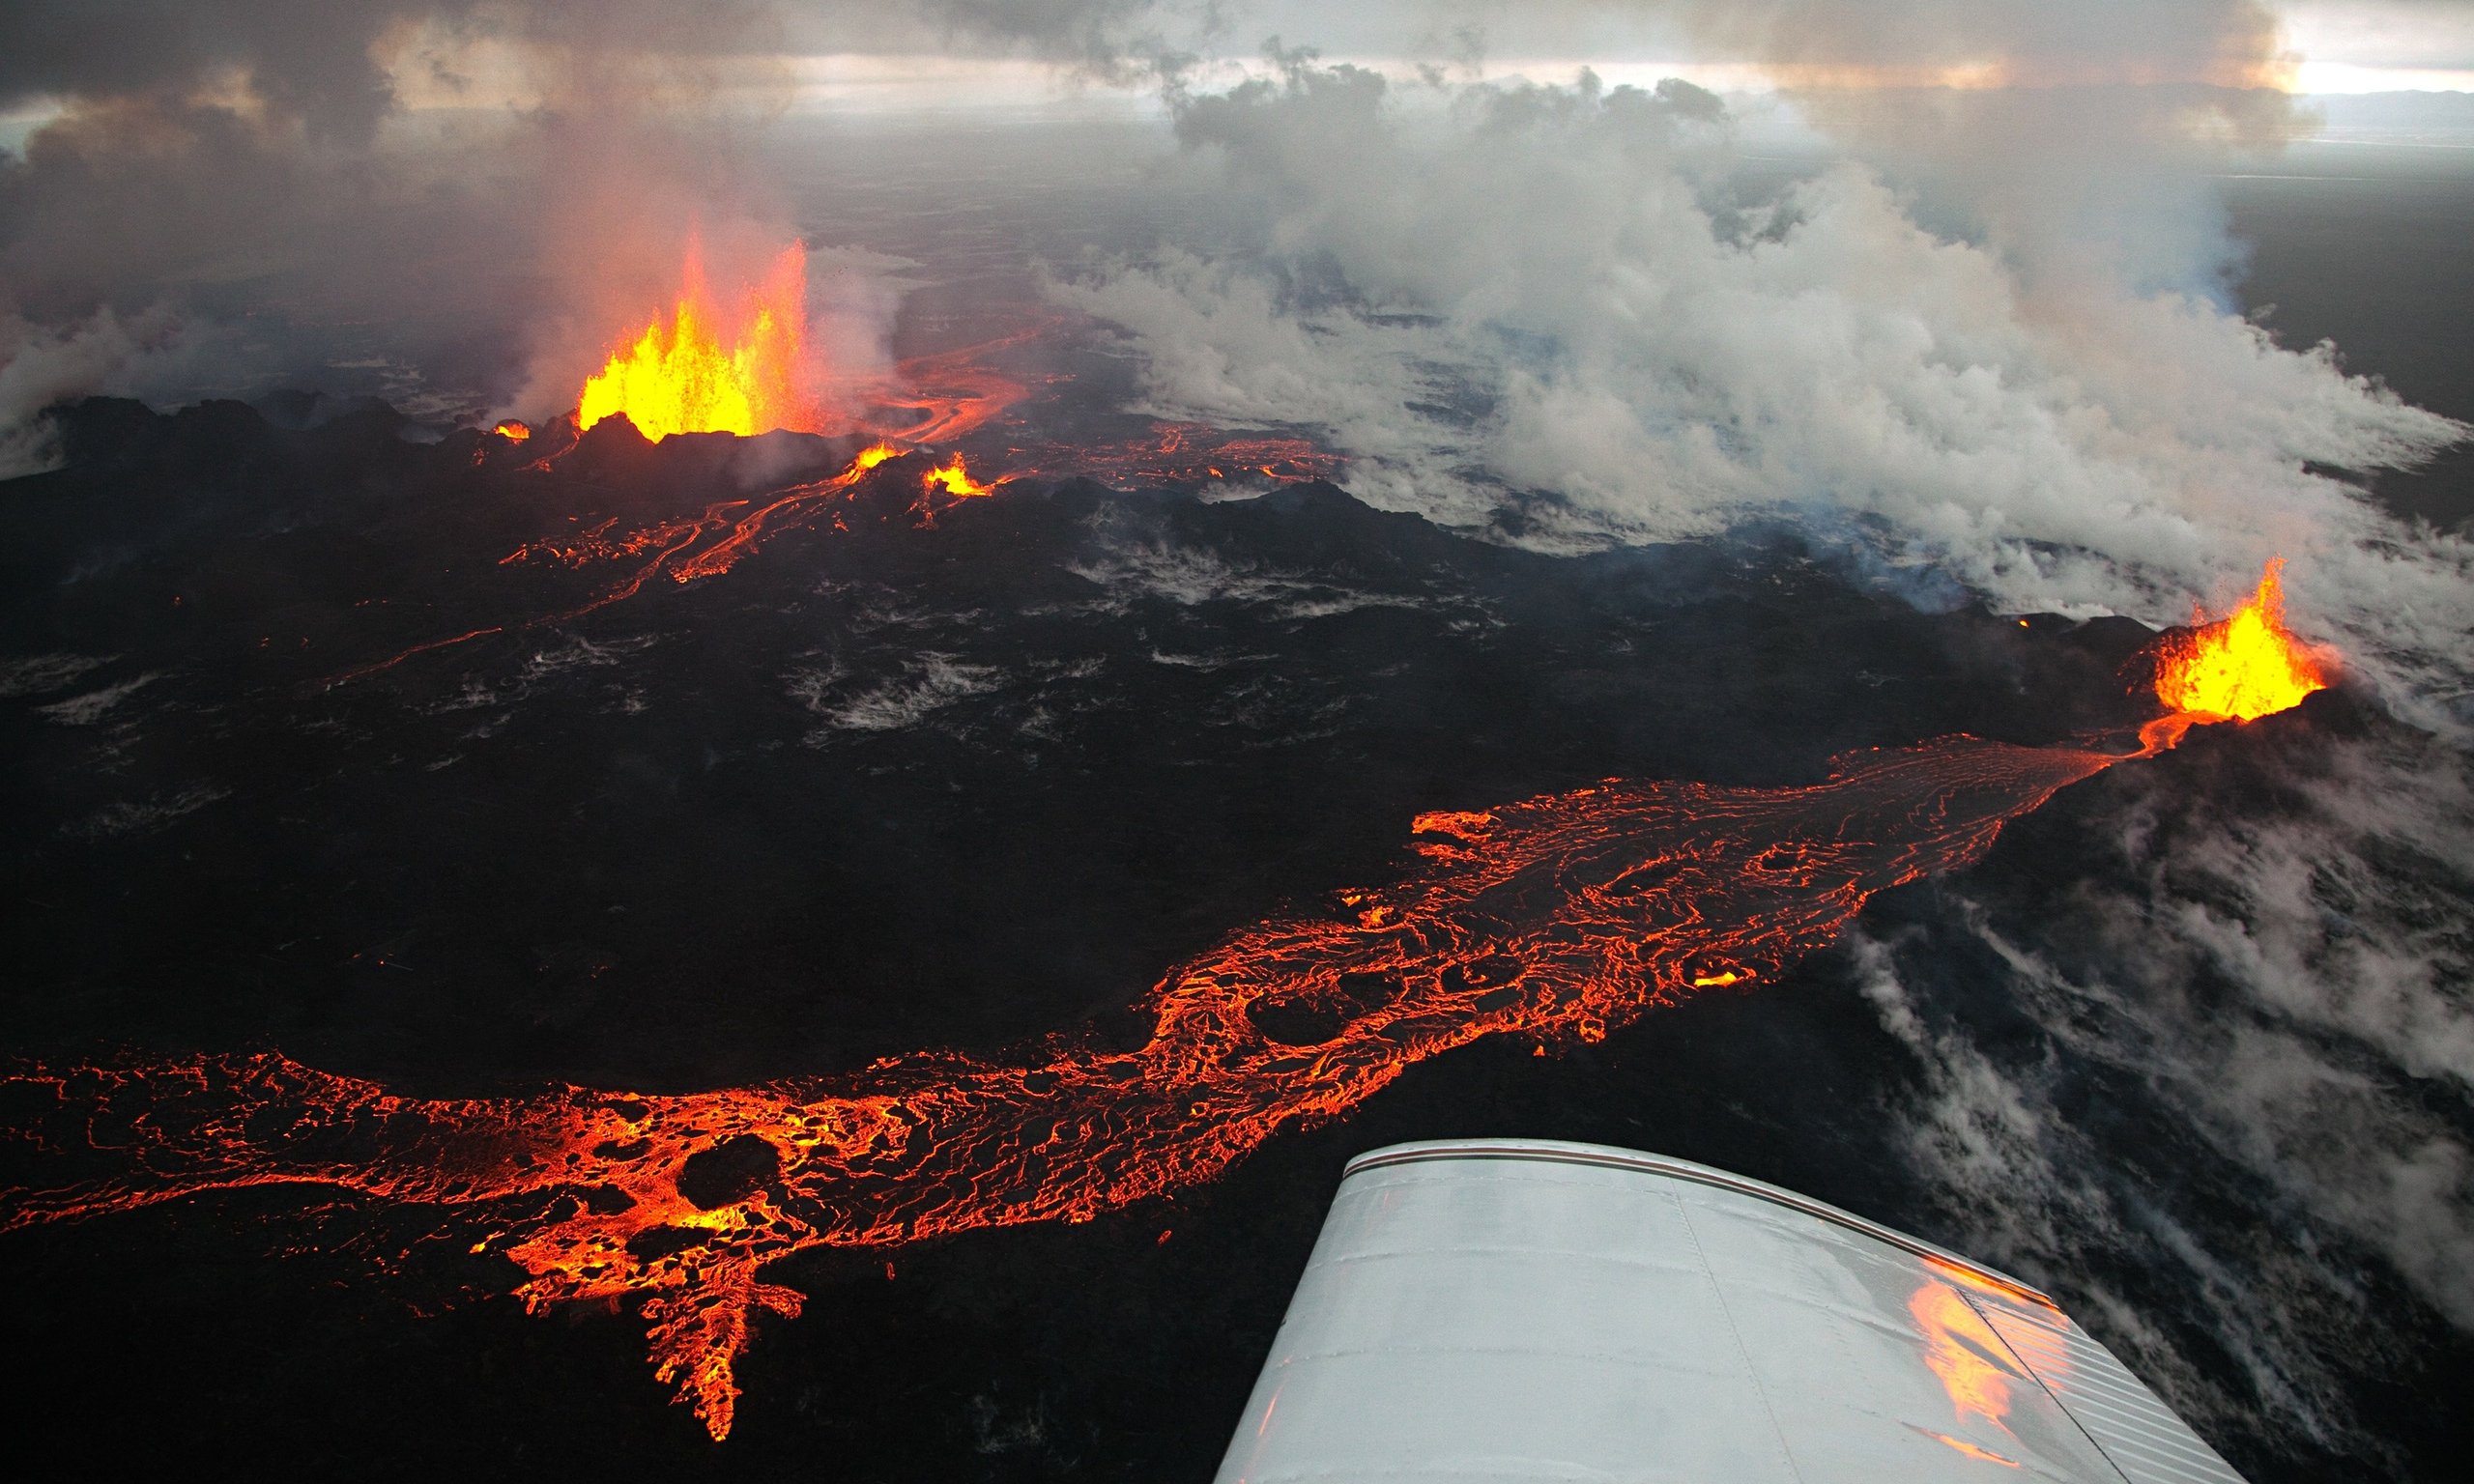 Сколько действующих вулканов было на планете маленького. Вулкан Бардарбунга. Извержение вулкана эйяфьядлайёкюдль в Исландии. Извержение вулкана Холухрейн, Исландия. Бардарбунга 2014 год Исландия.